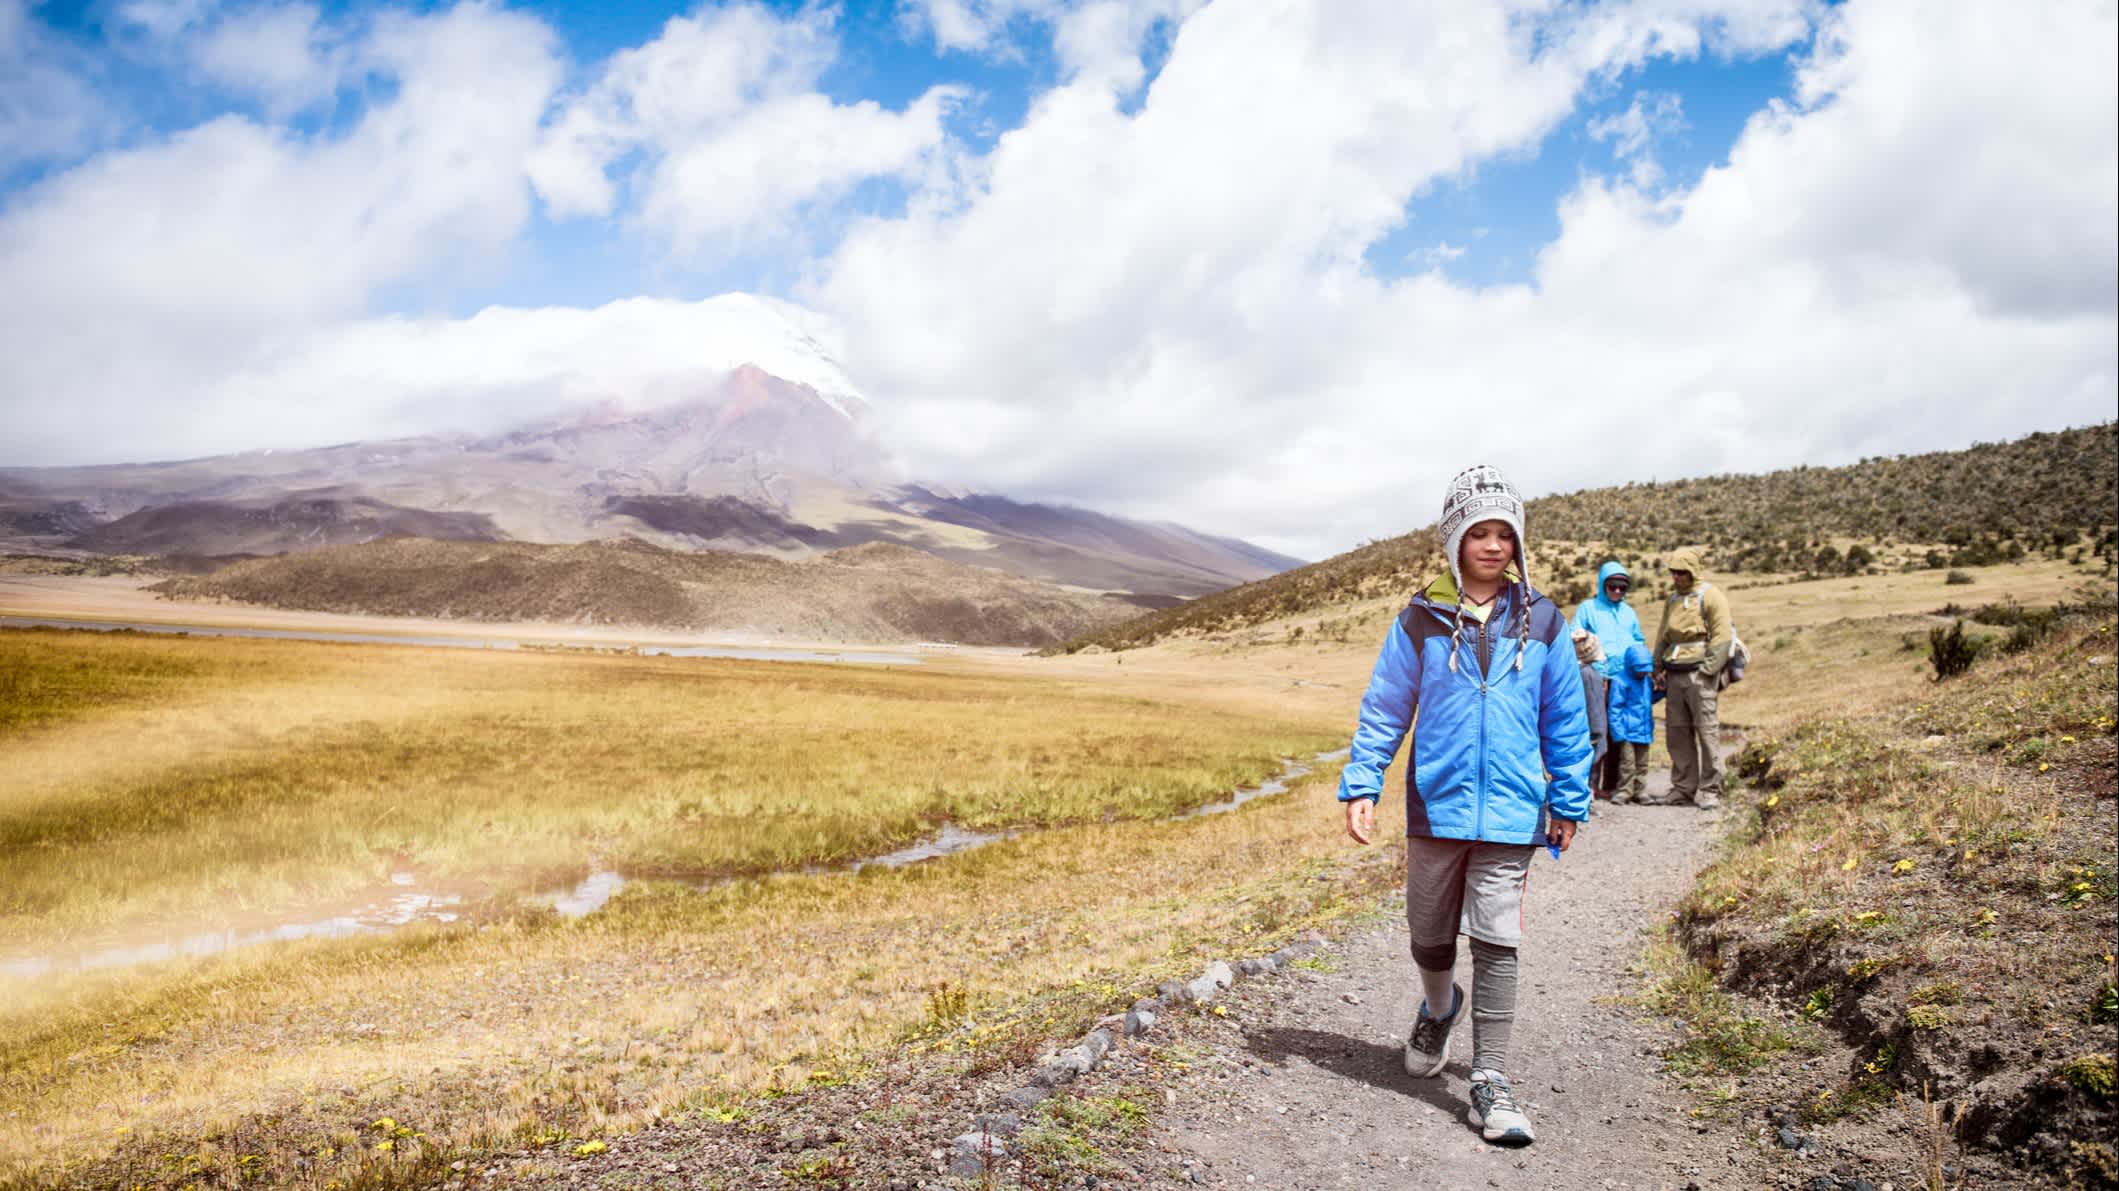 Famille marchant sur un sentier avec le volcan Cotopaxi en arrière-plan, en Équateur.